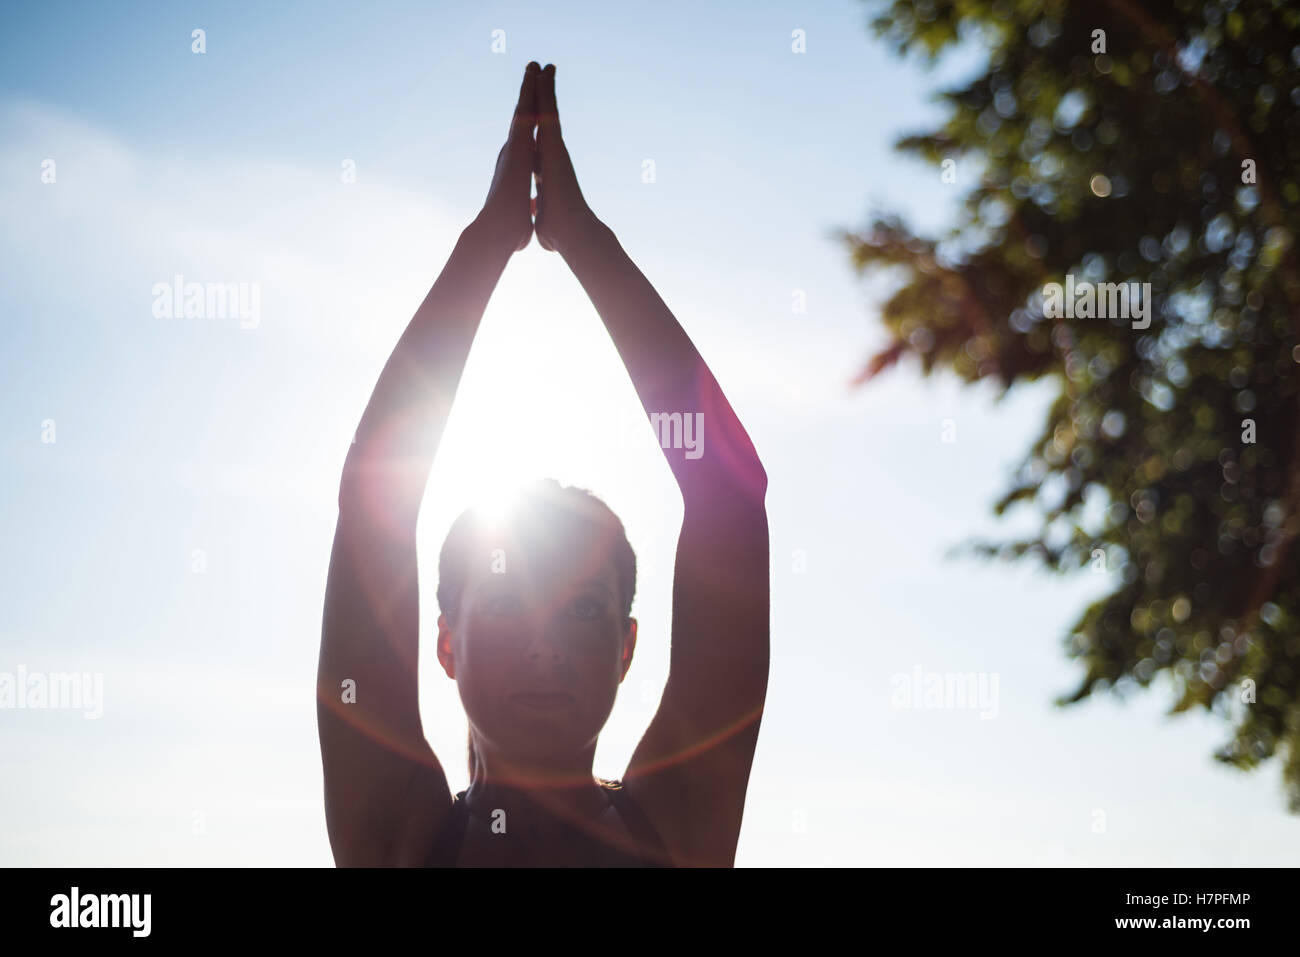 Frau, die Durchführung von Yoga im Garten Stockfoto